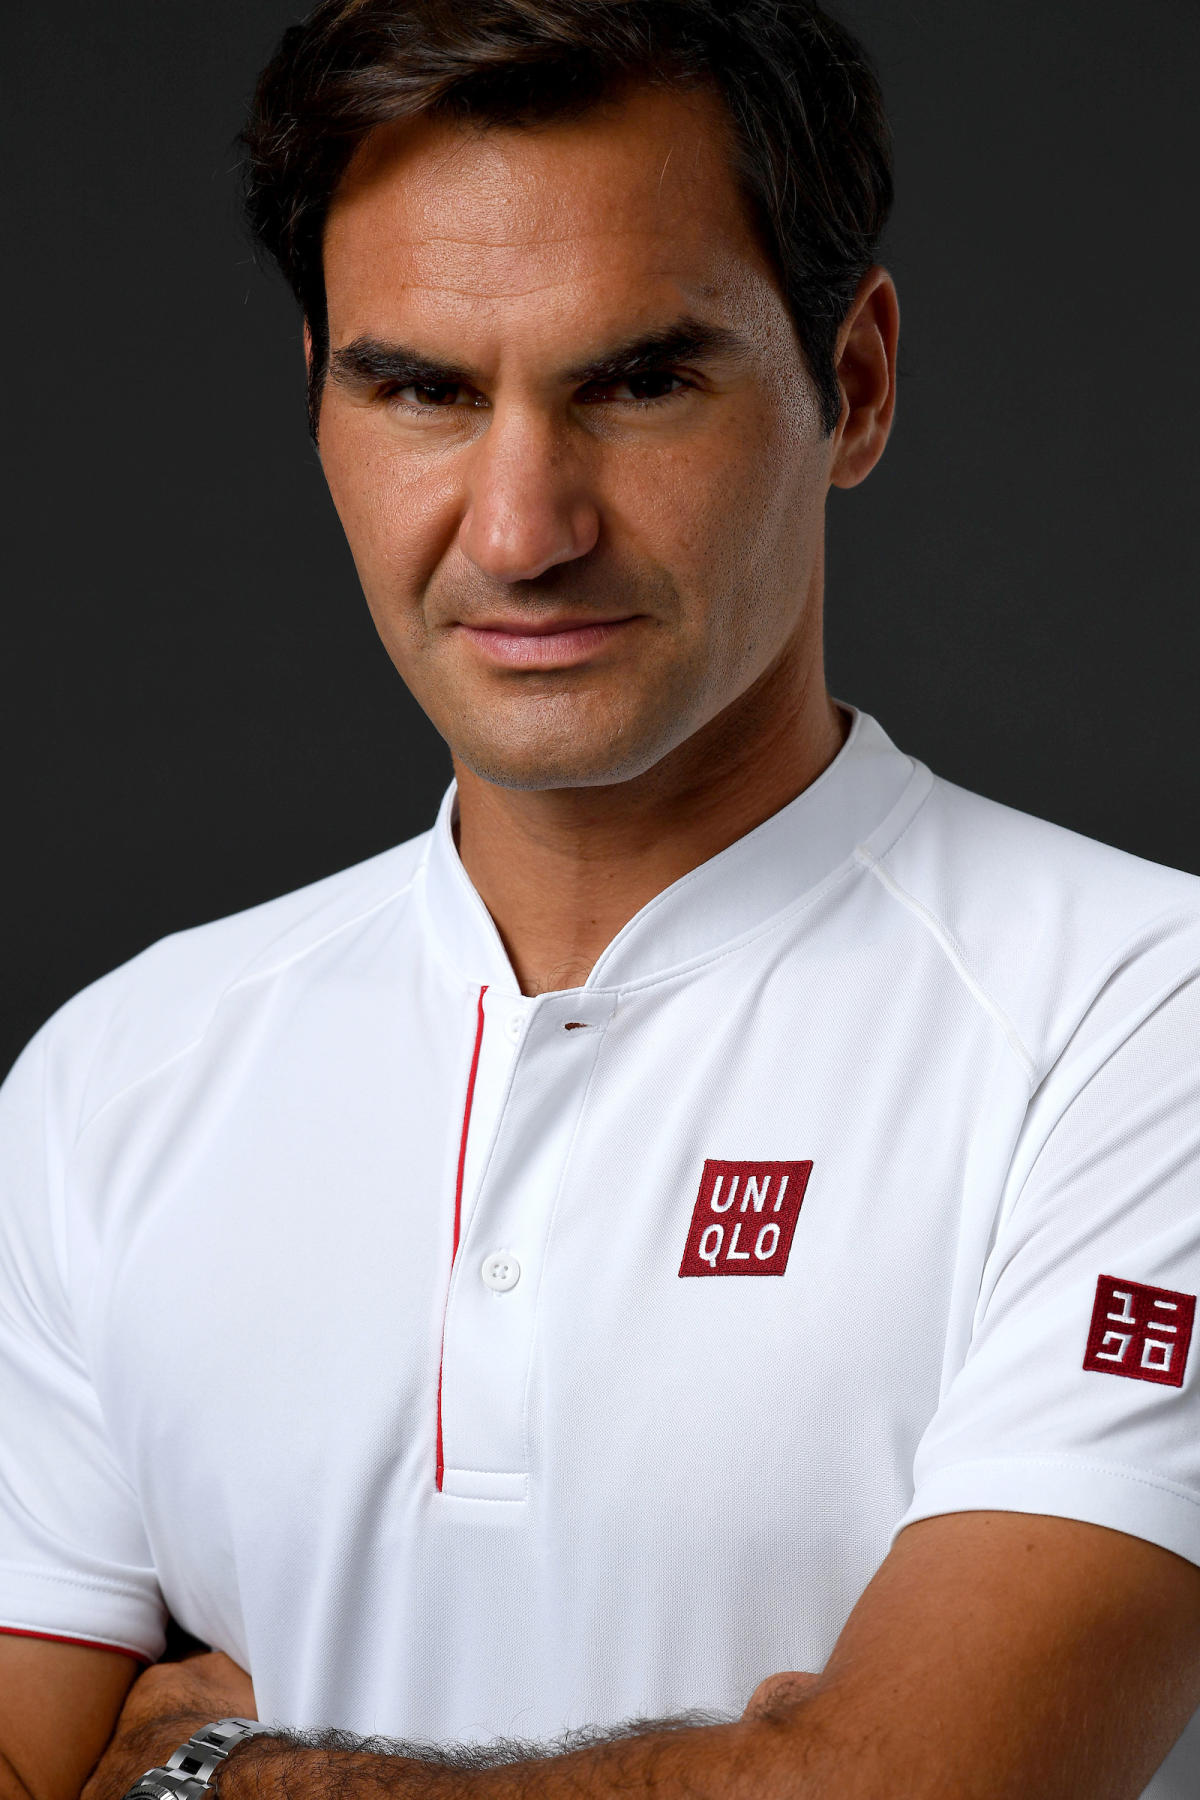 Roger Federer is Uniqlo's latest global ambassador